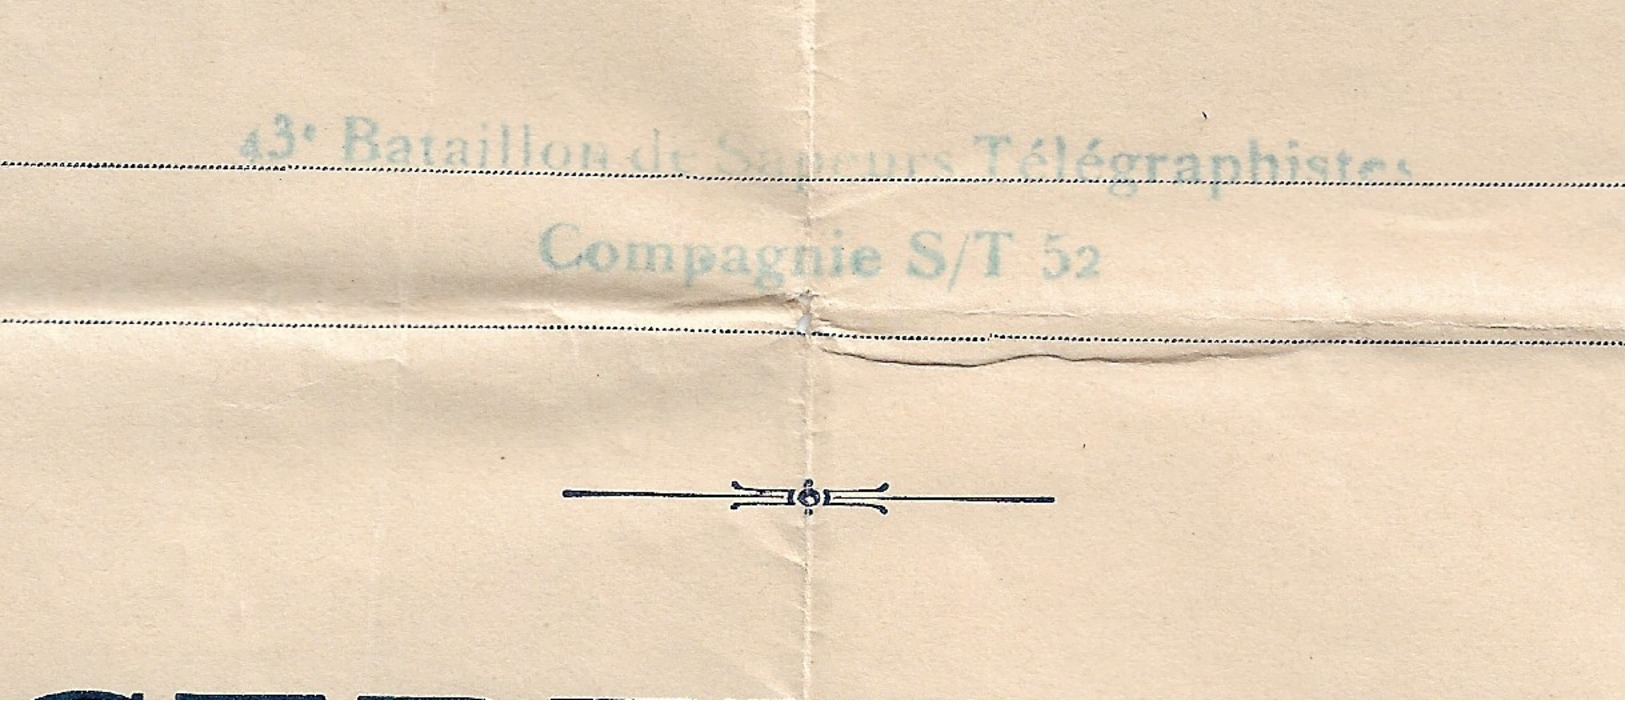 Armée Française Du Levant, Bataillon Sapeur Télégraphiste  S/T 52,  Beyrouth, 1923, Toupes Du Grand Liban, - Historical Documents